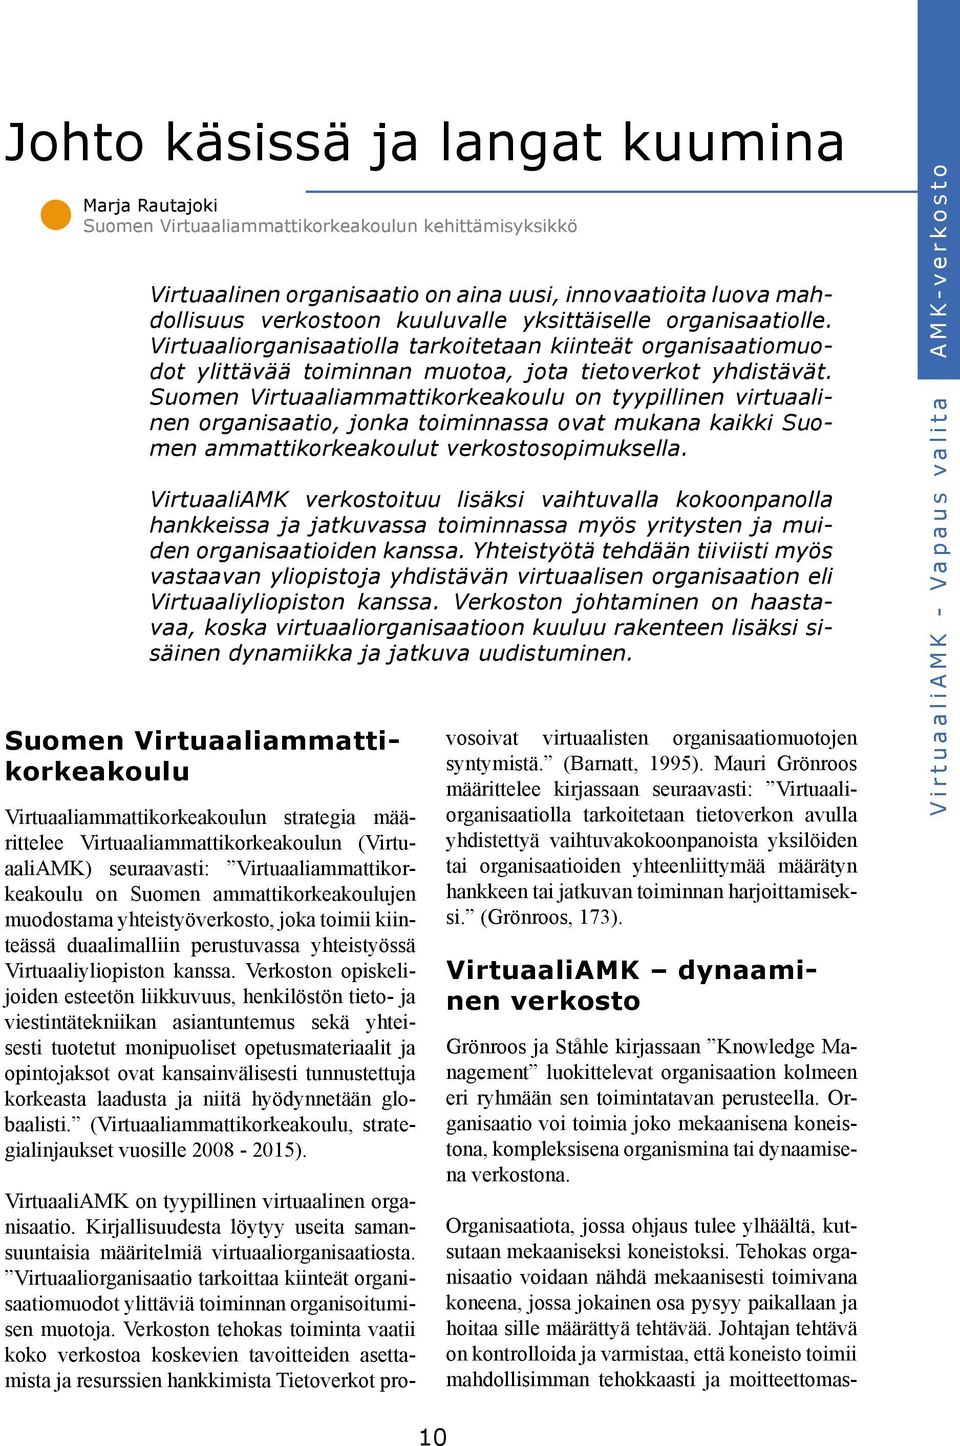 Suomen Virtuaaliammattikorkeakoulu on tyypillinen virtuaalinen organisaatio, jonka toiminnassa ovat mukana kaikki Suomen ammattikorkeakoulut verkostosopimuksella.